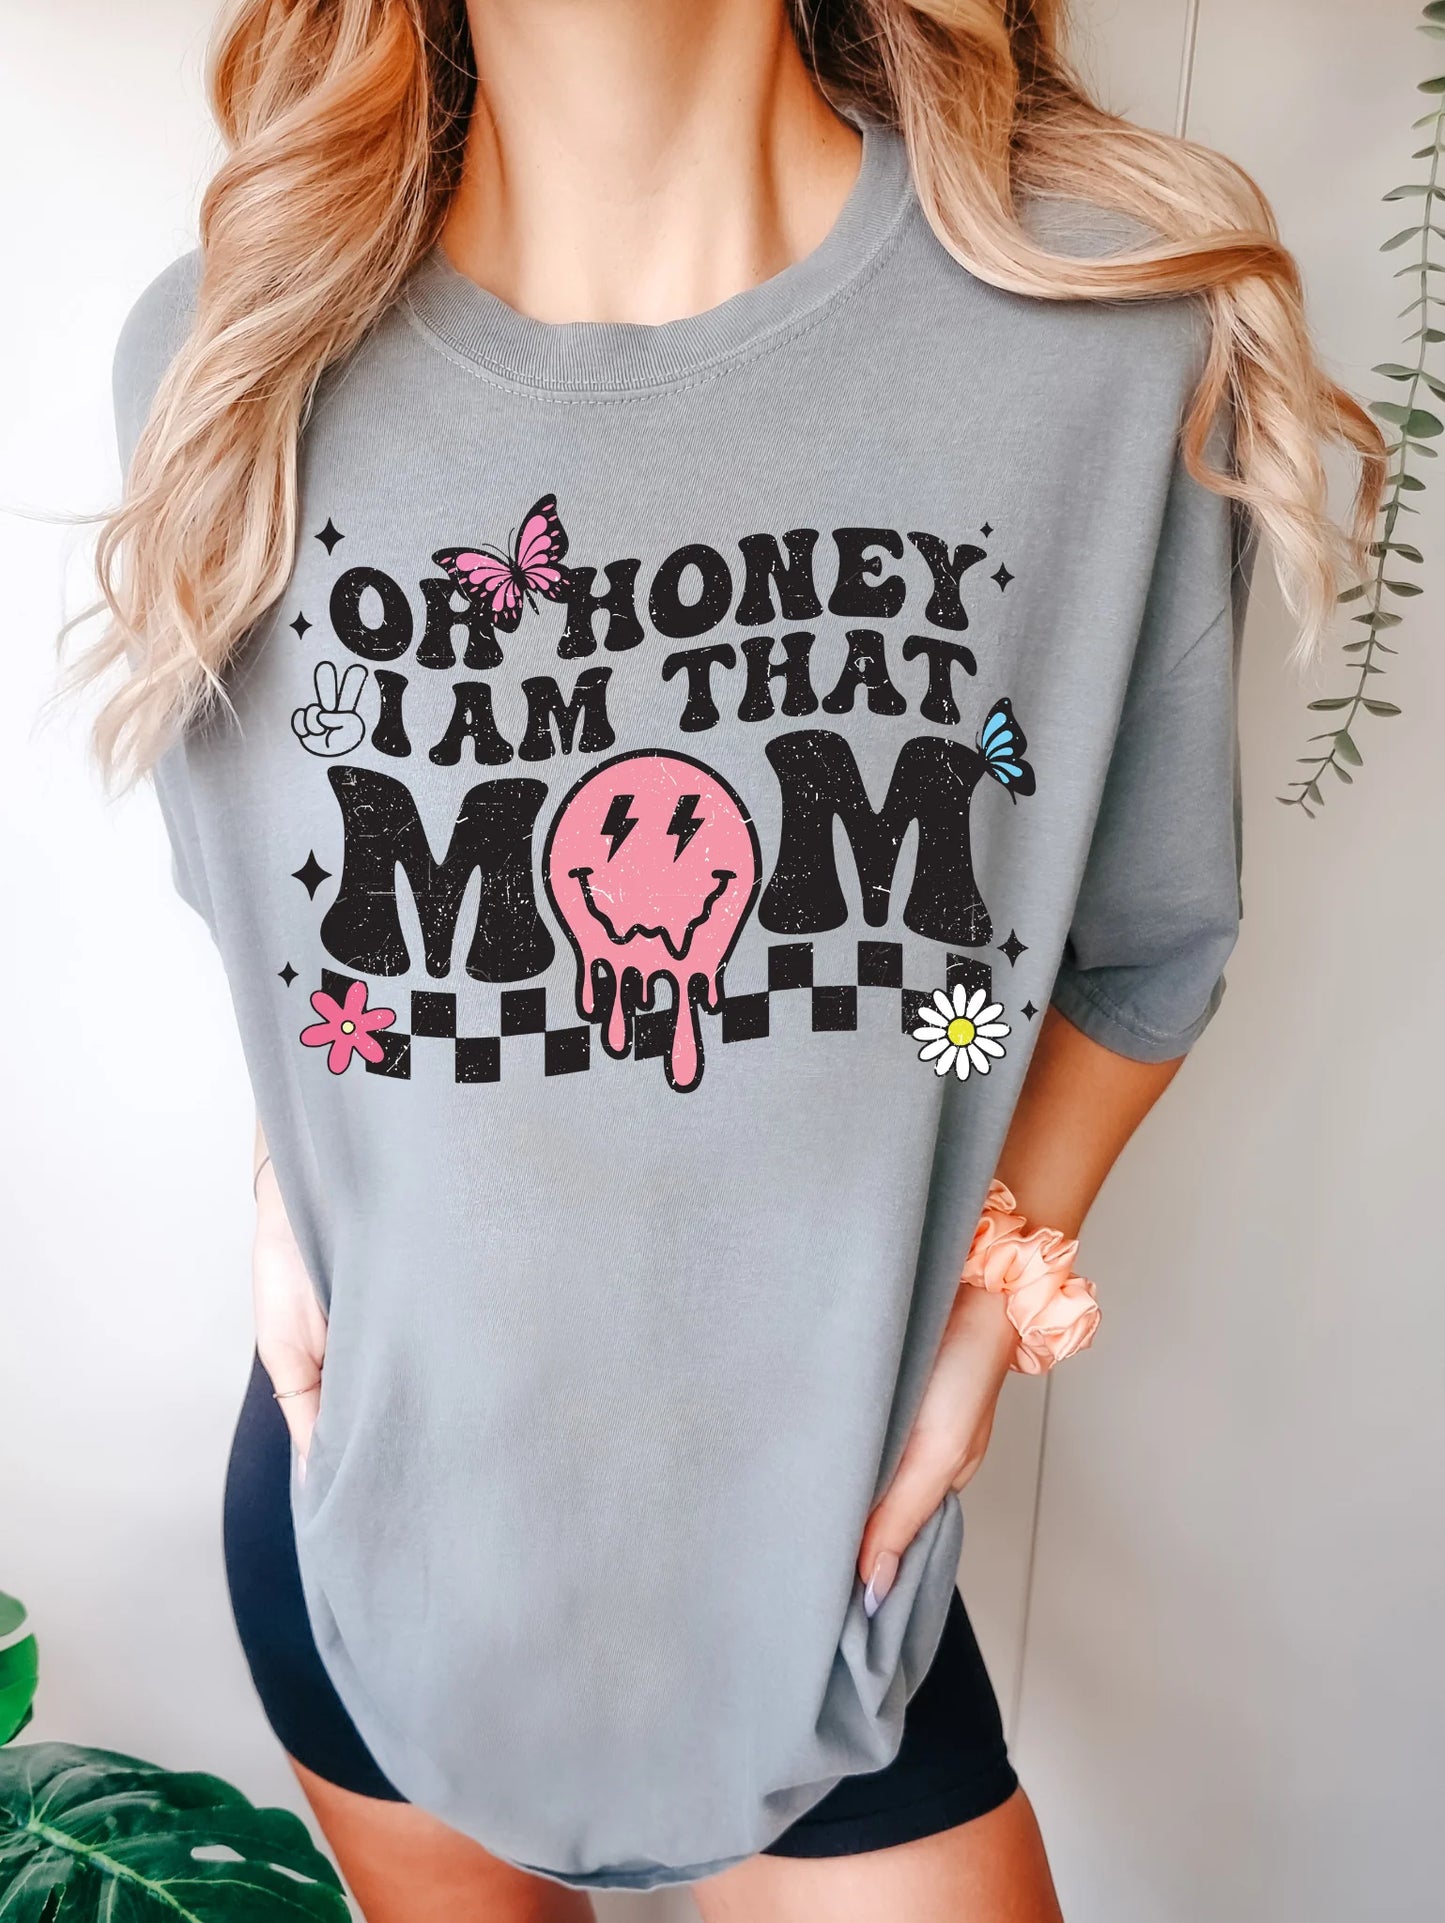 Oh honey, I am that Mom Tshirt